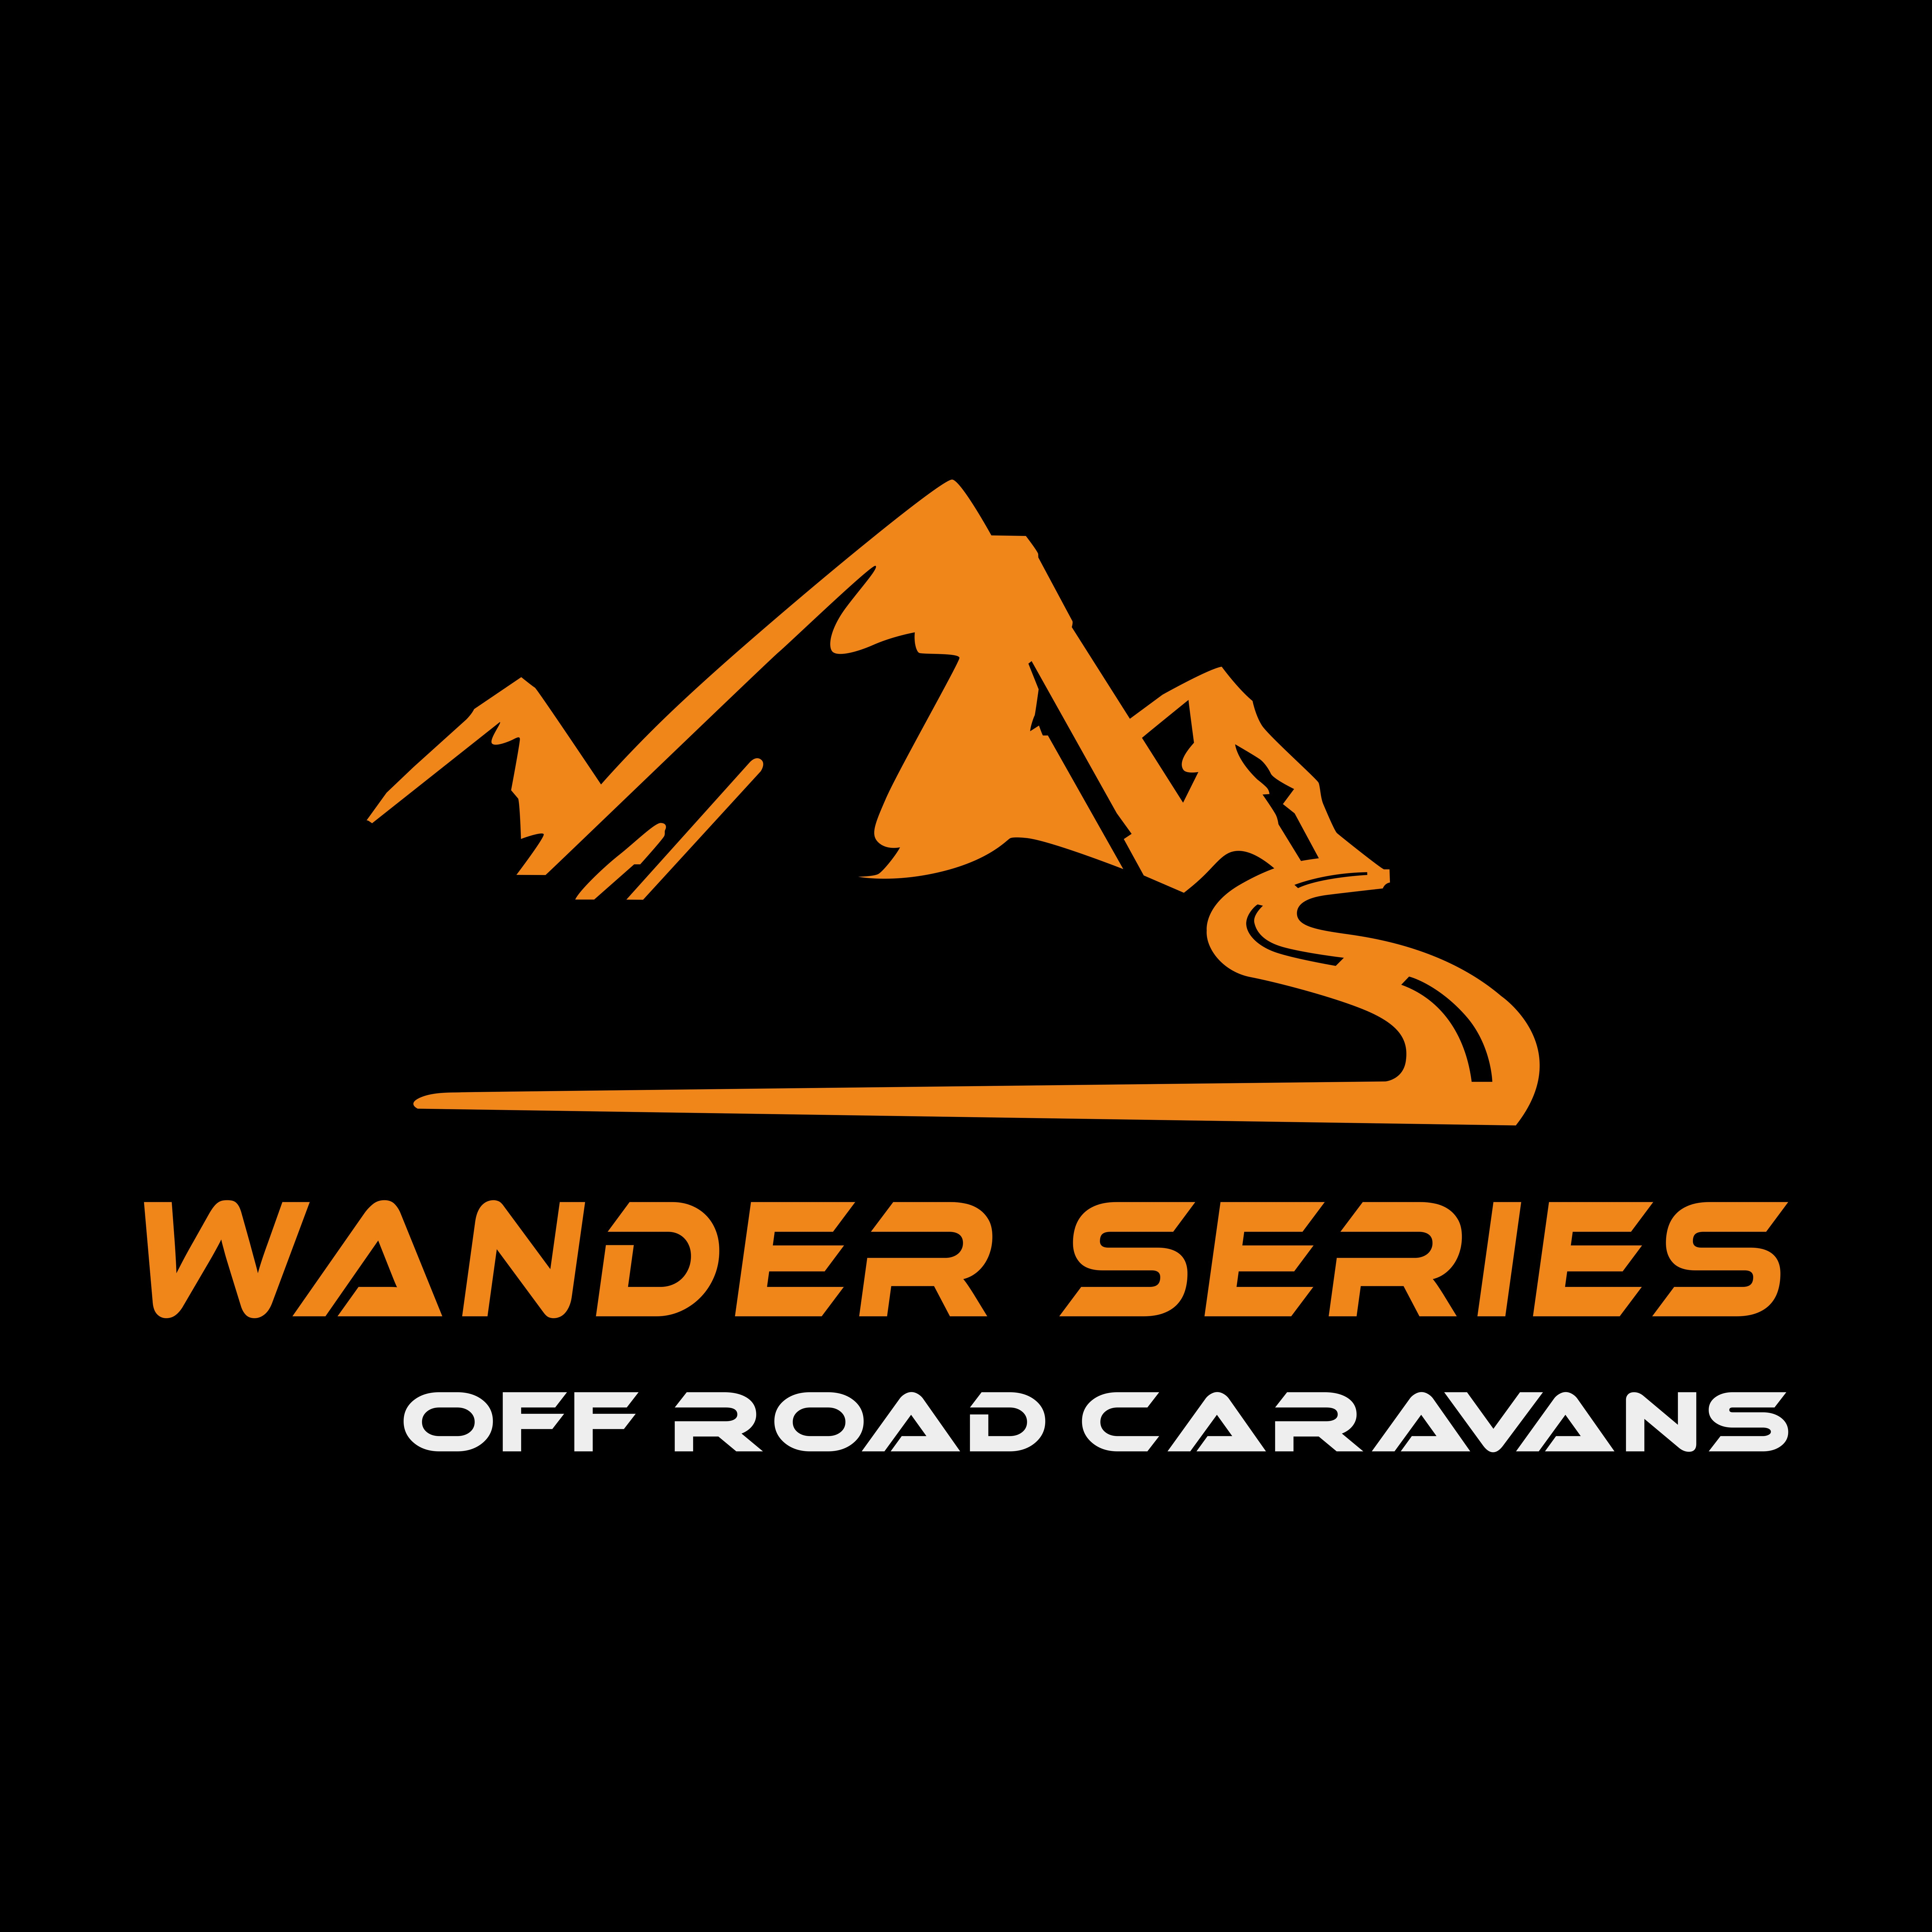 Wander Series Campers & Off Road Caravans